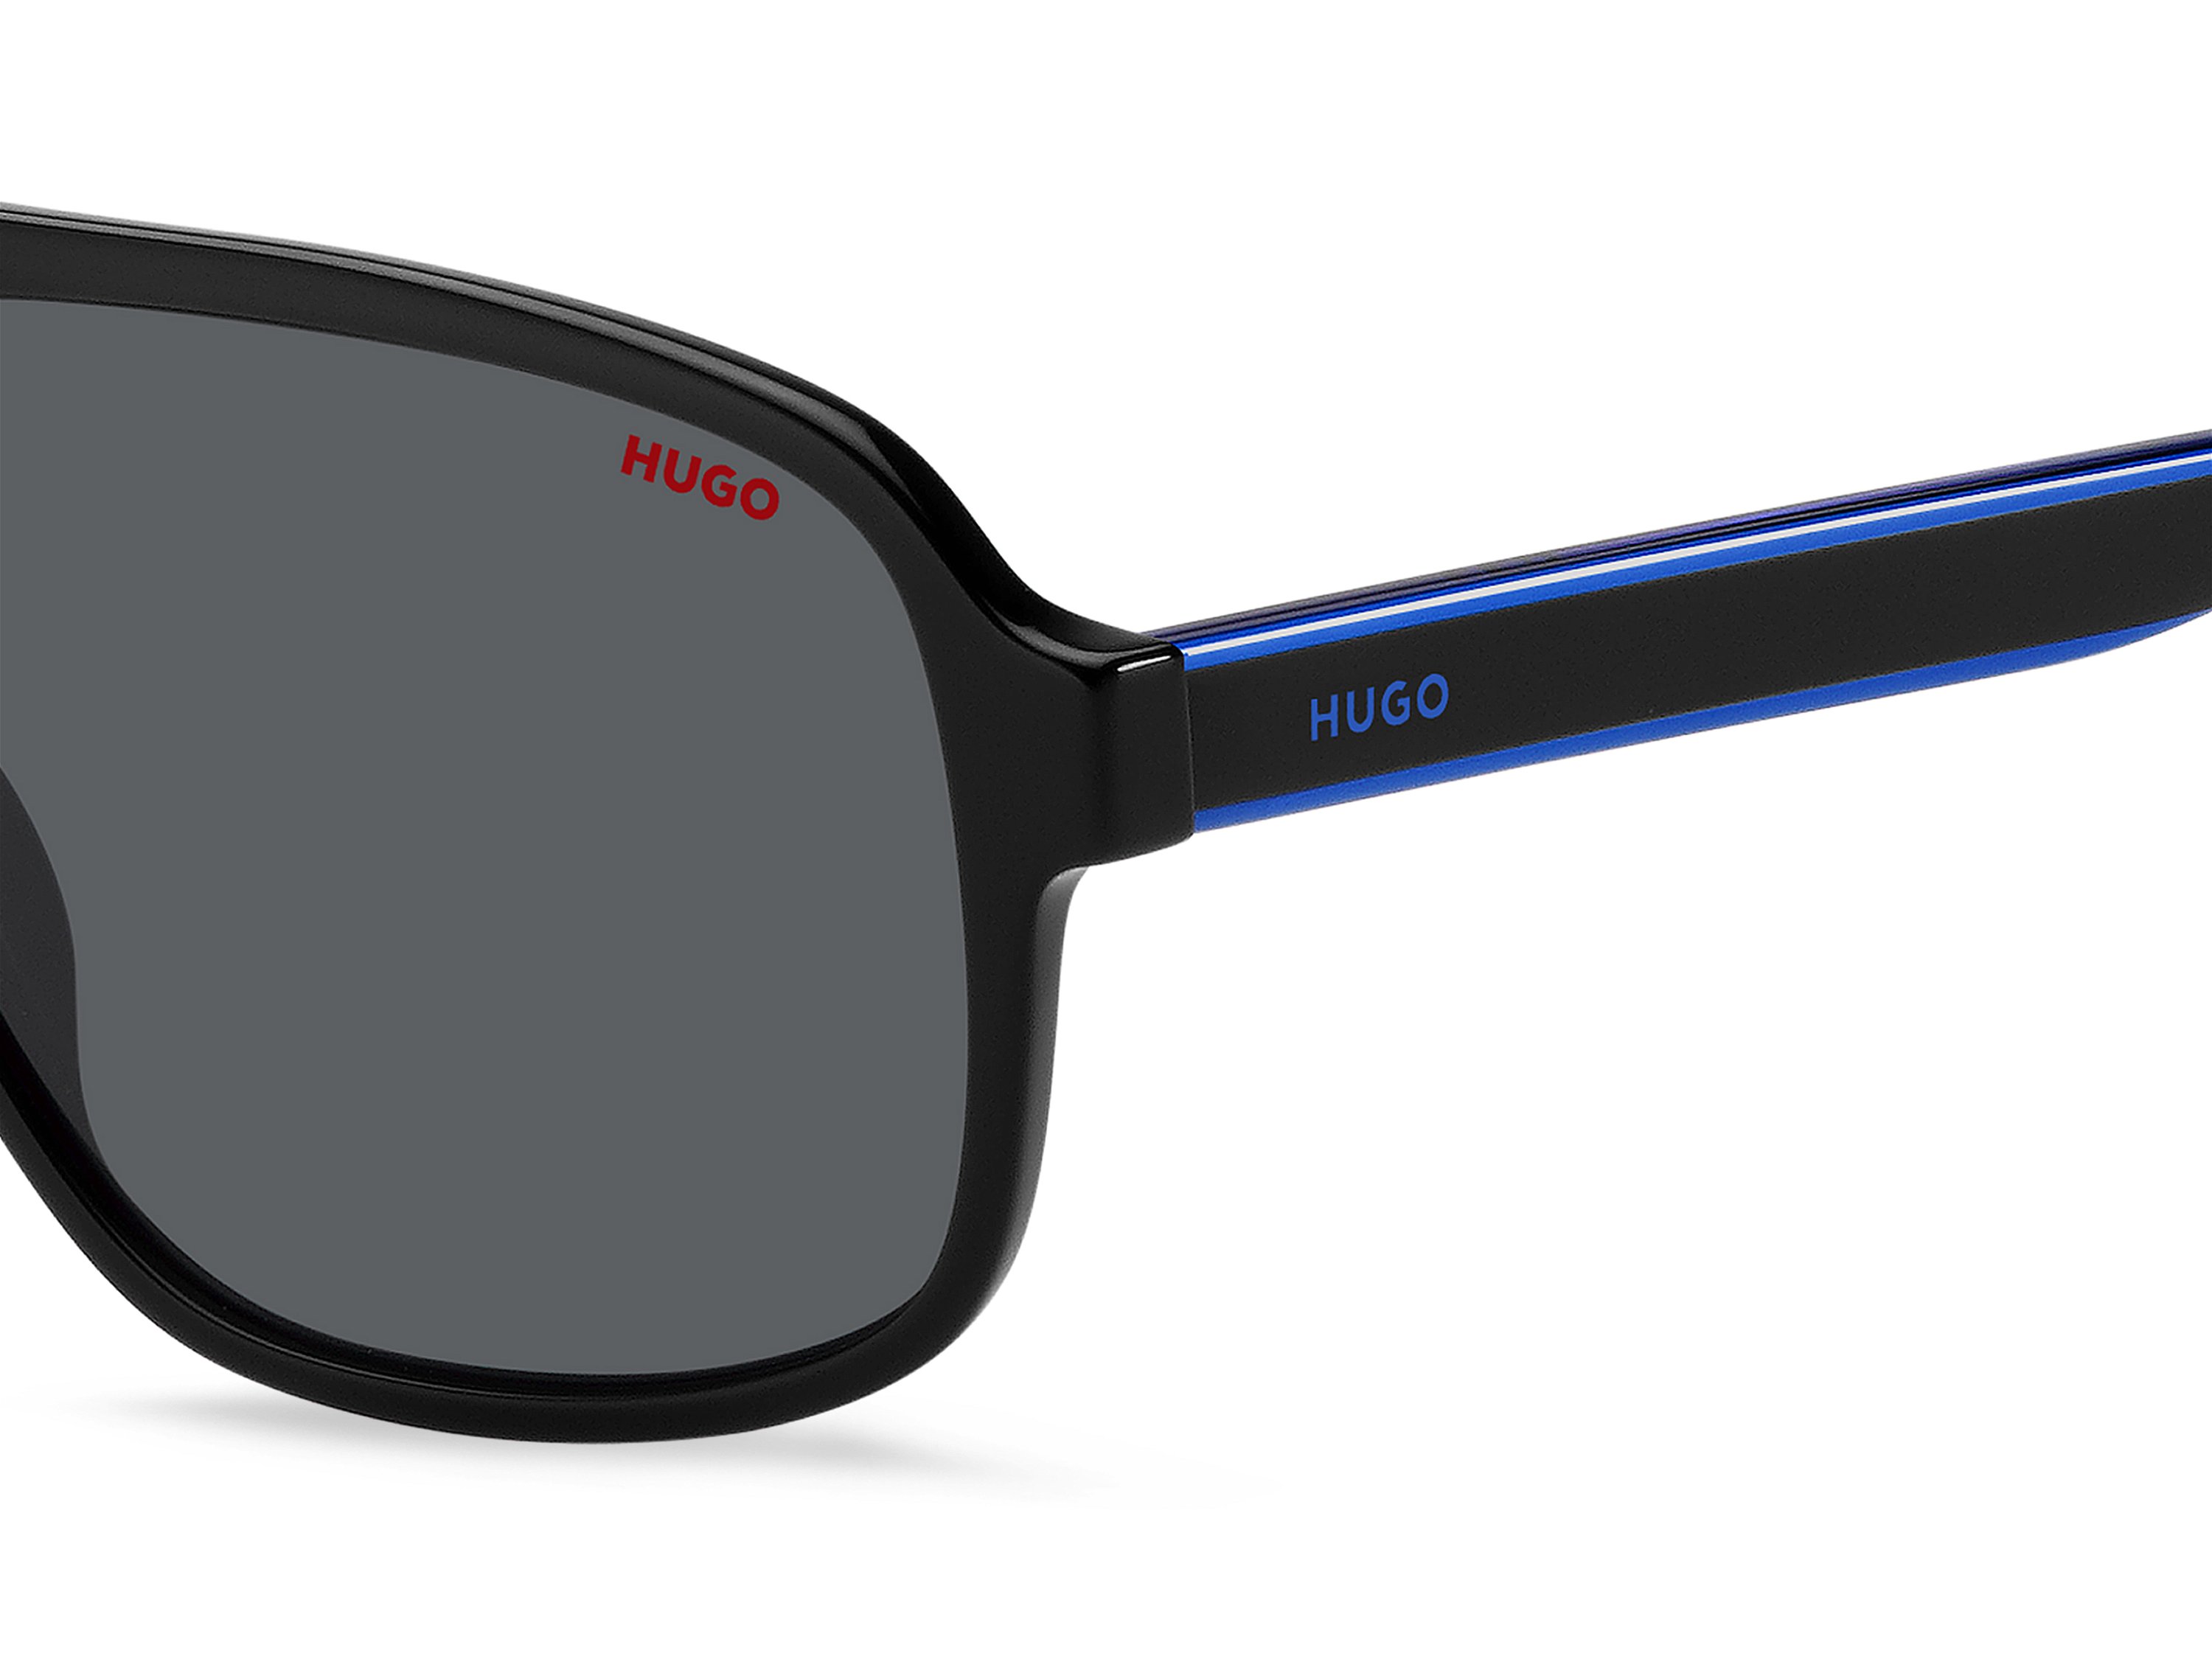 Das Bild zeigt die Sonnenbrille HG1296/S D51 von der Marke Hugo in blau/schwarz.